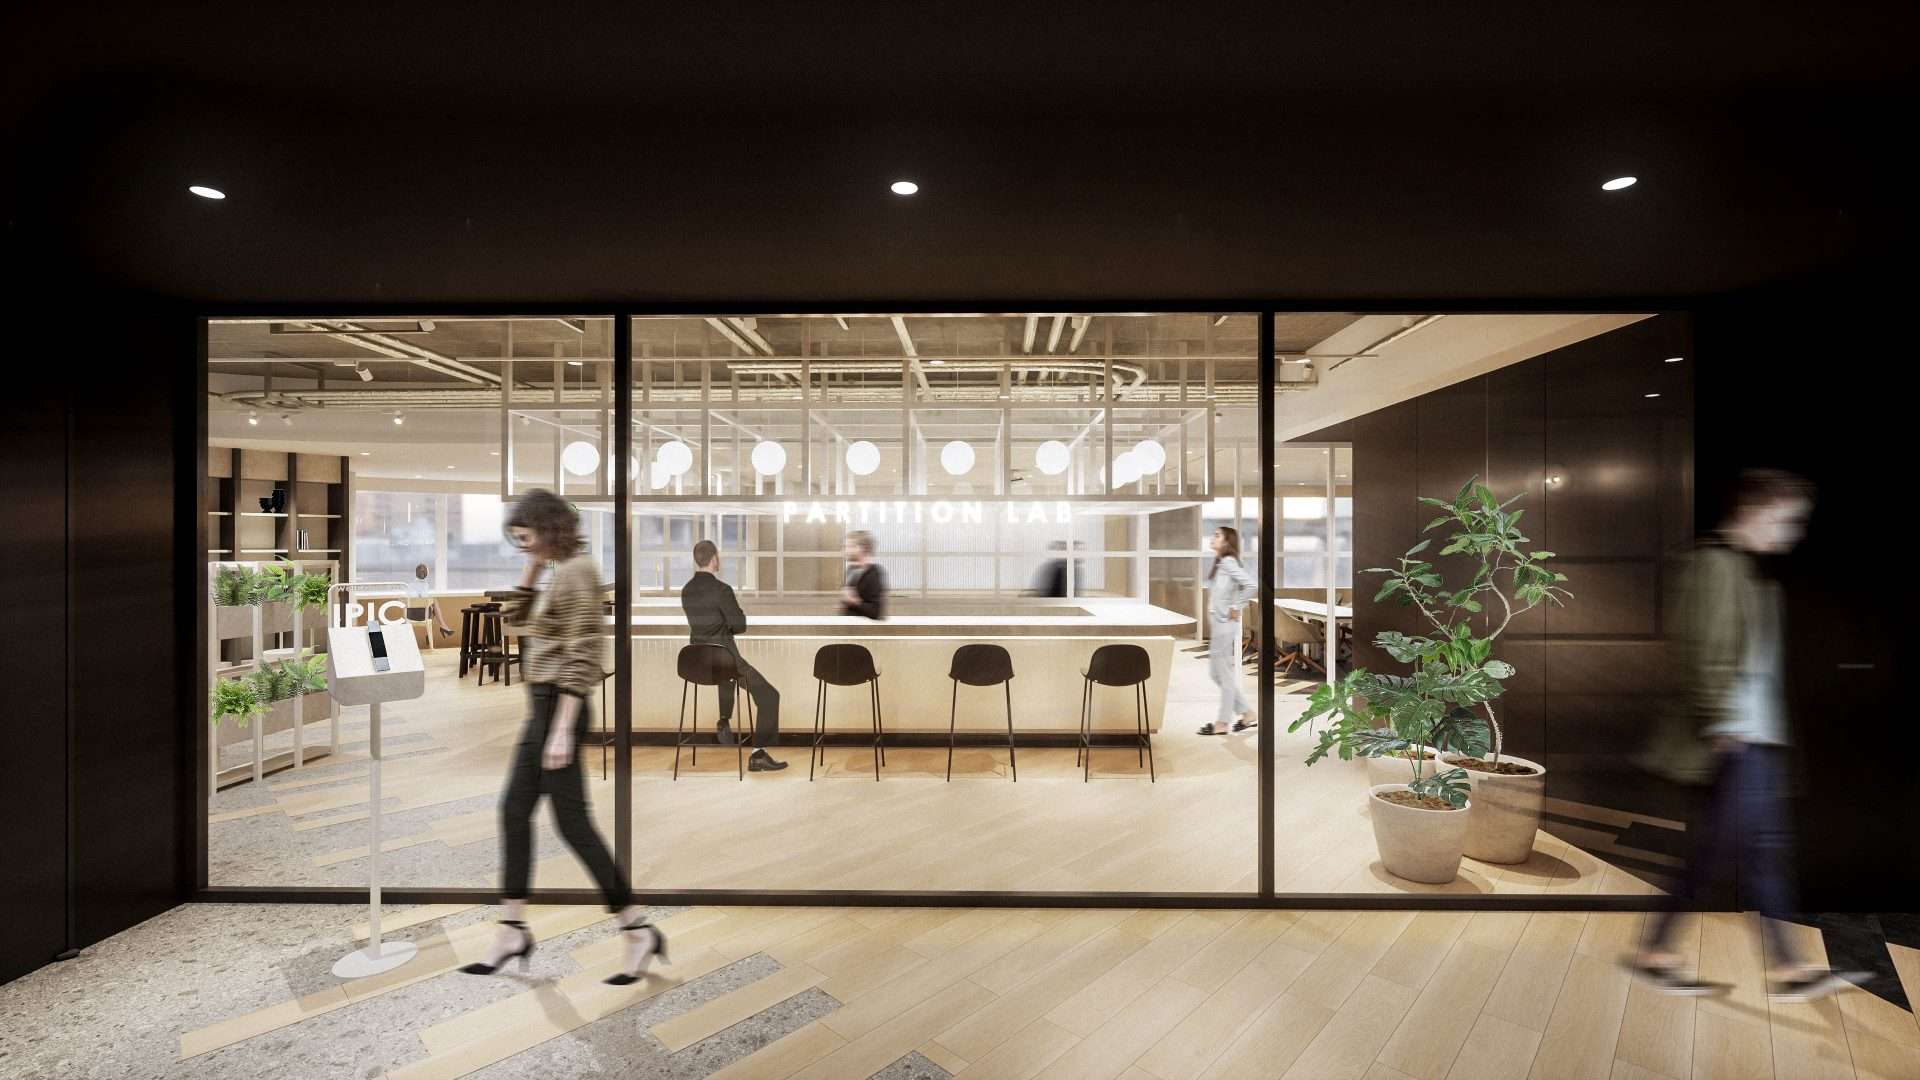 アイピック株式会社新オフィスのエントランス。ガラスパーテーションの開放感溢れるエントランス